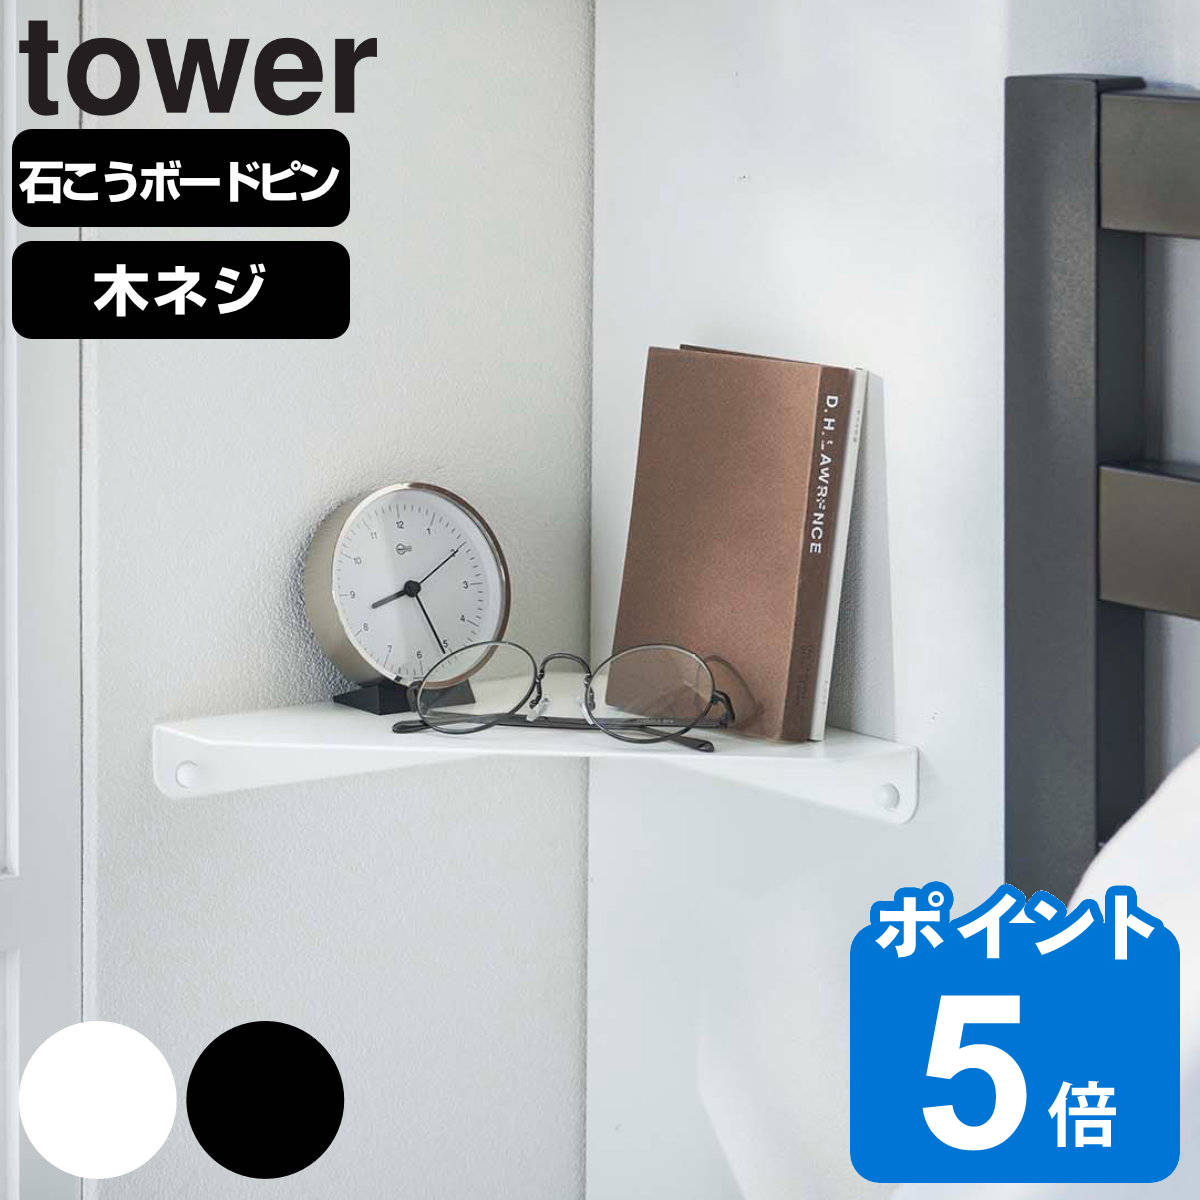 山崎実業 tower 石こうボード壁対応 コーナーシェルフ タワー